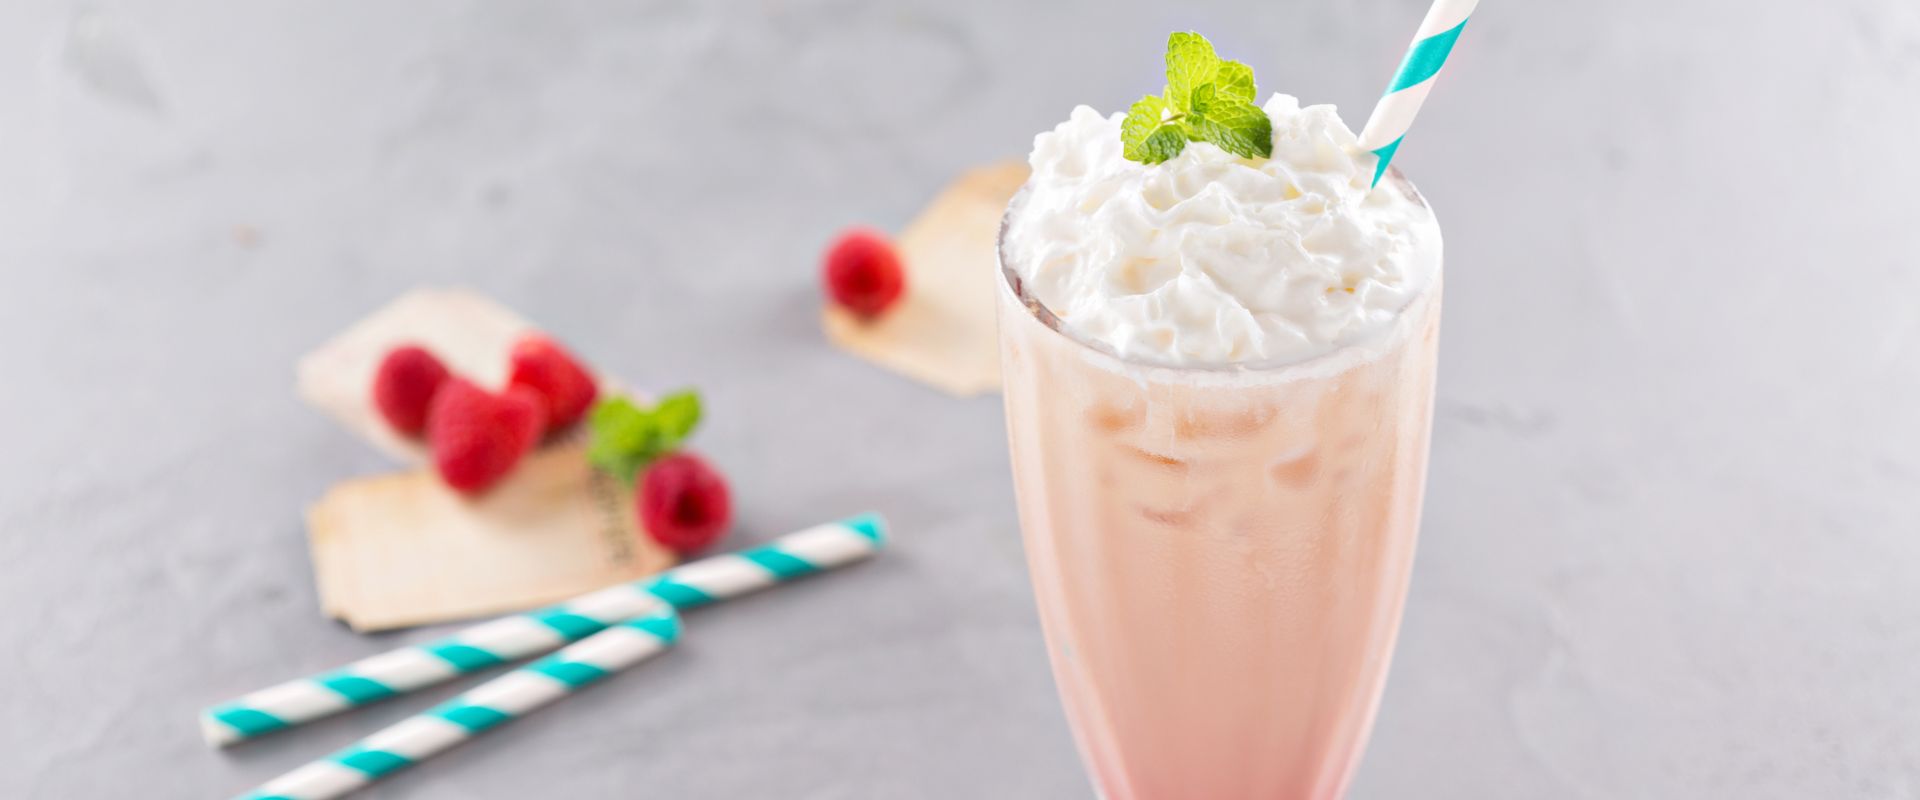 Is a Milkshake a Drink or Dessert? The Ultimate Debate!